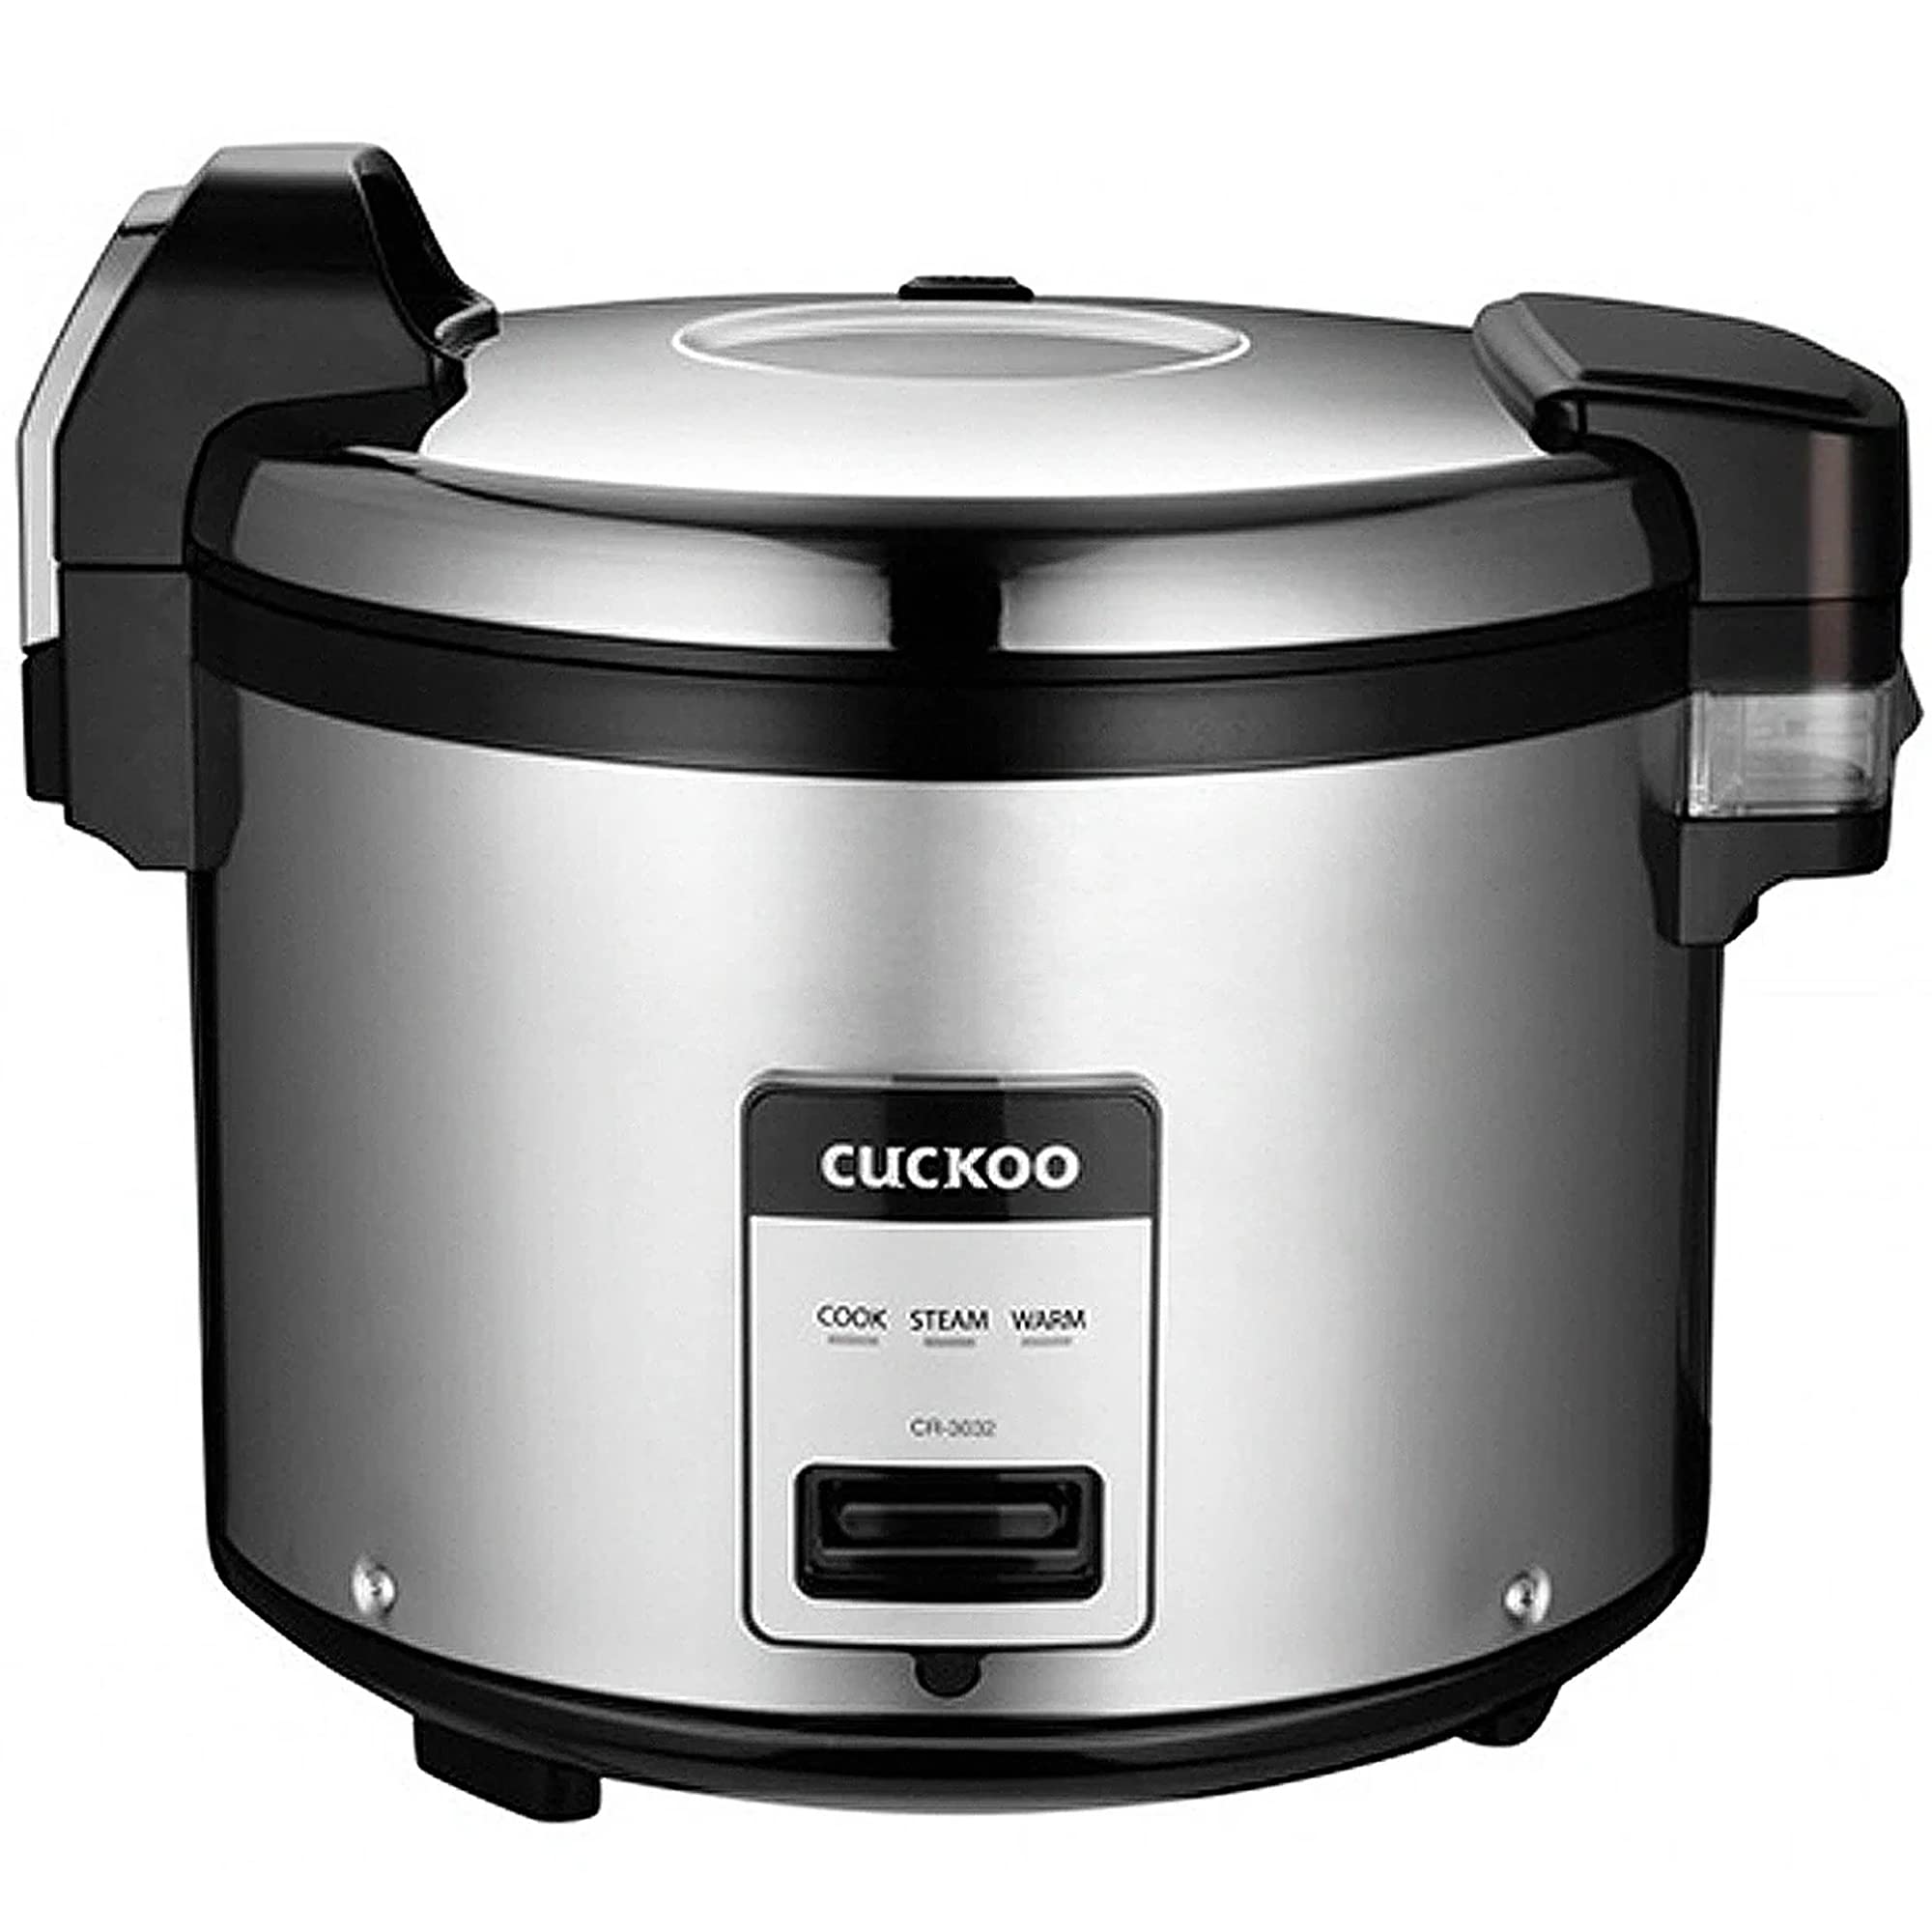 CUCKOO CR-3032 | 30合炊き（生）業務用炊飯器・保温器 |自動あたためモード、こびりつきにくい内釜、取り外し可能な内蓋 |ステンレス鋼